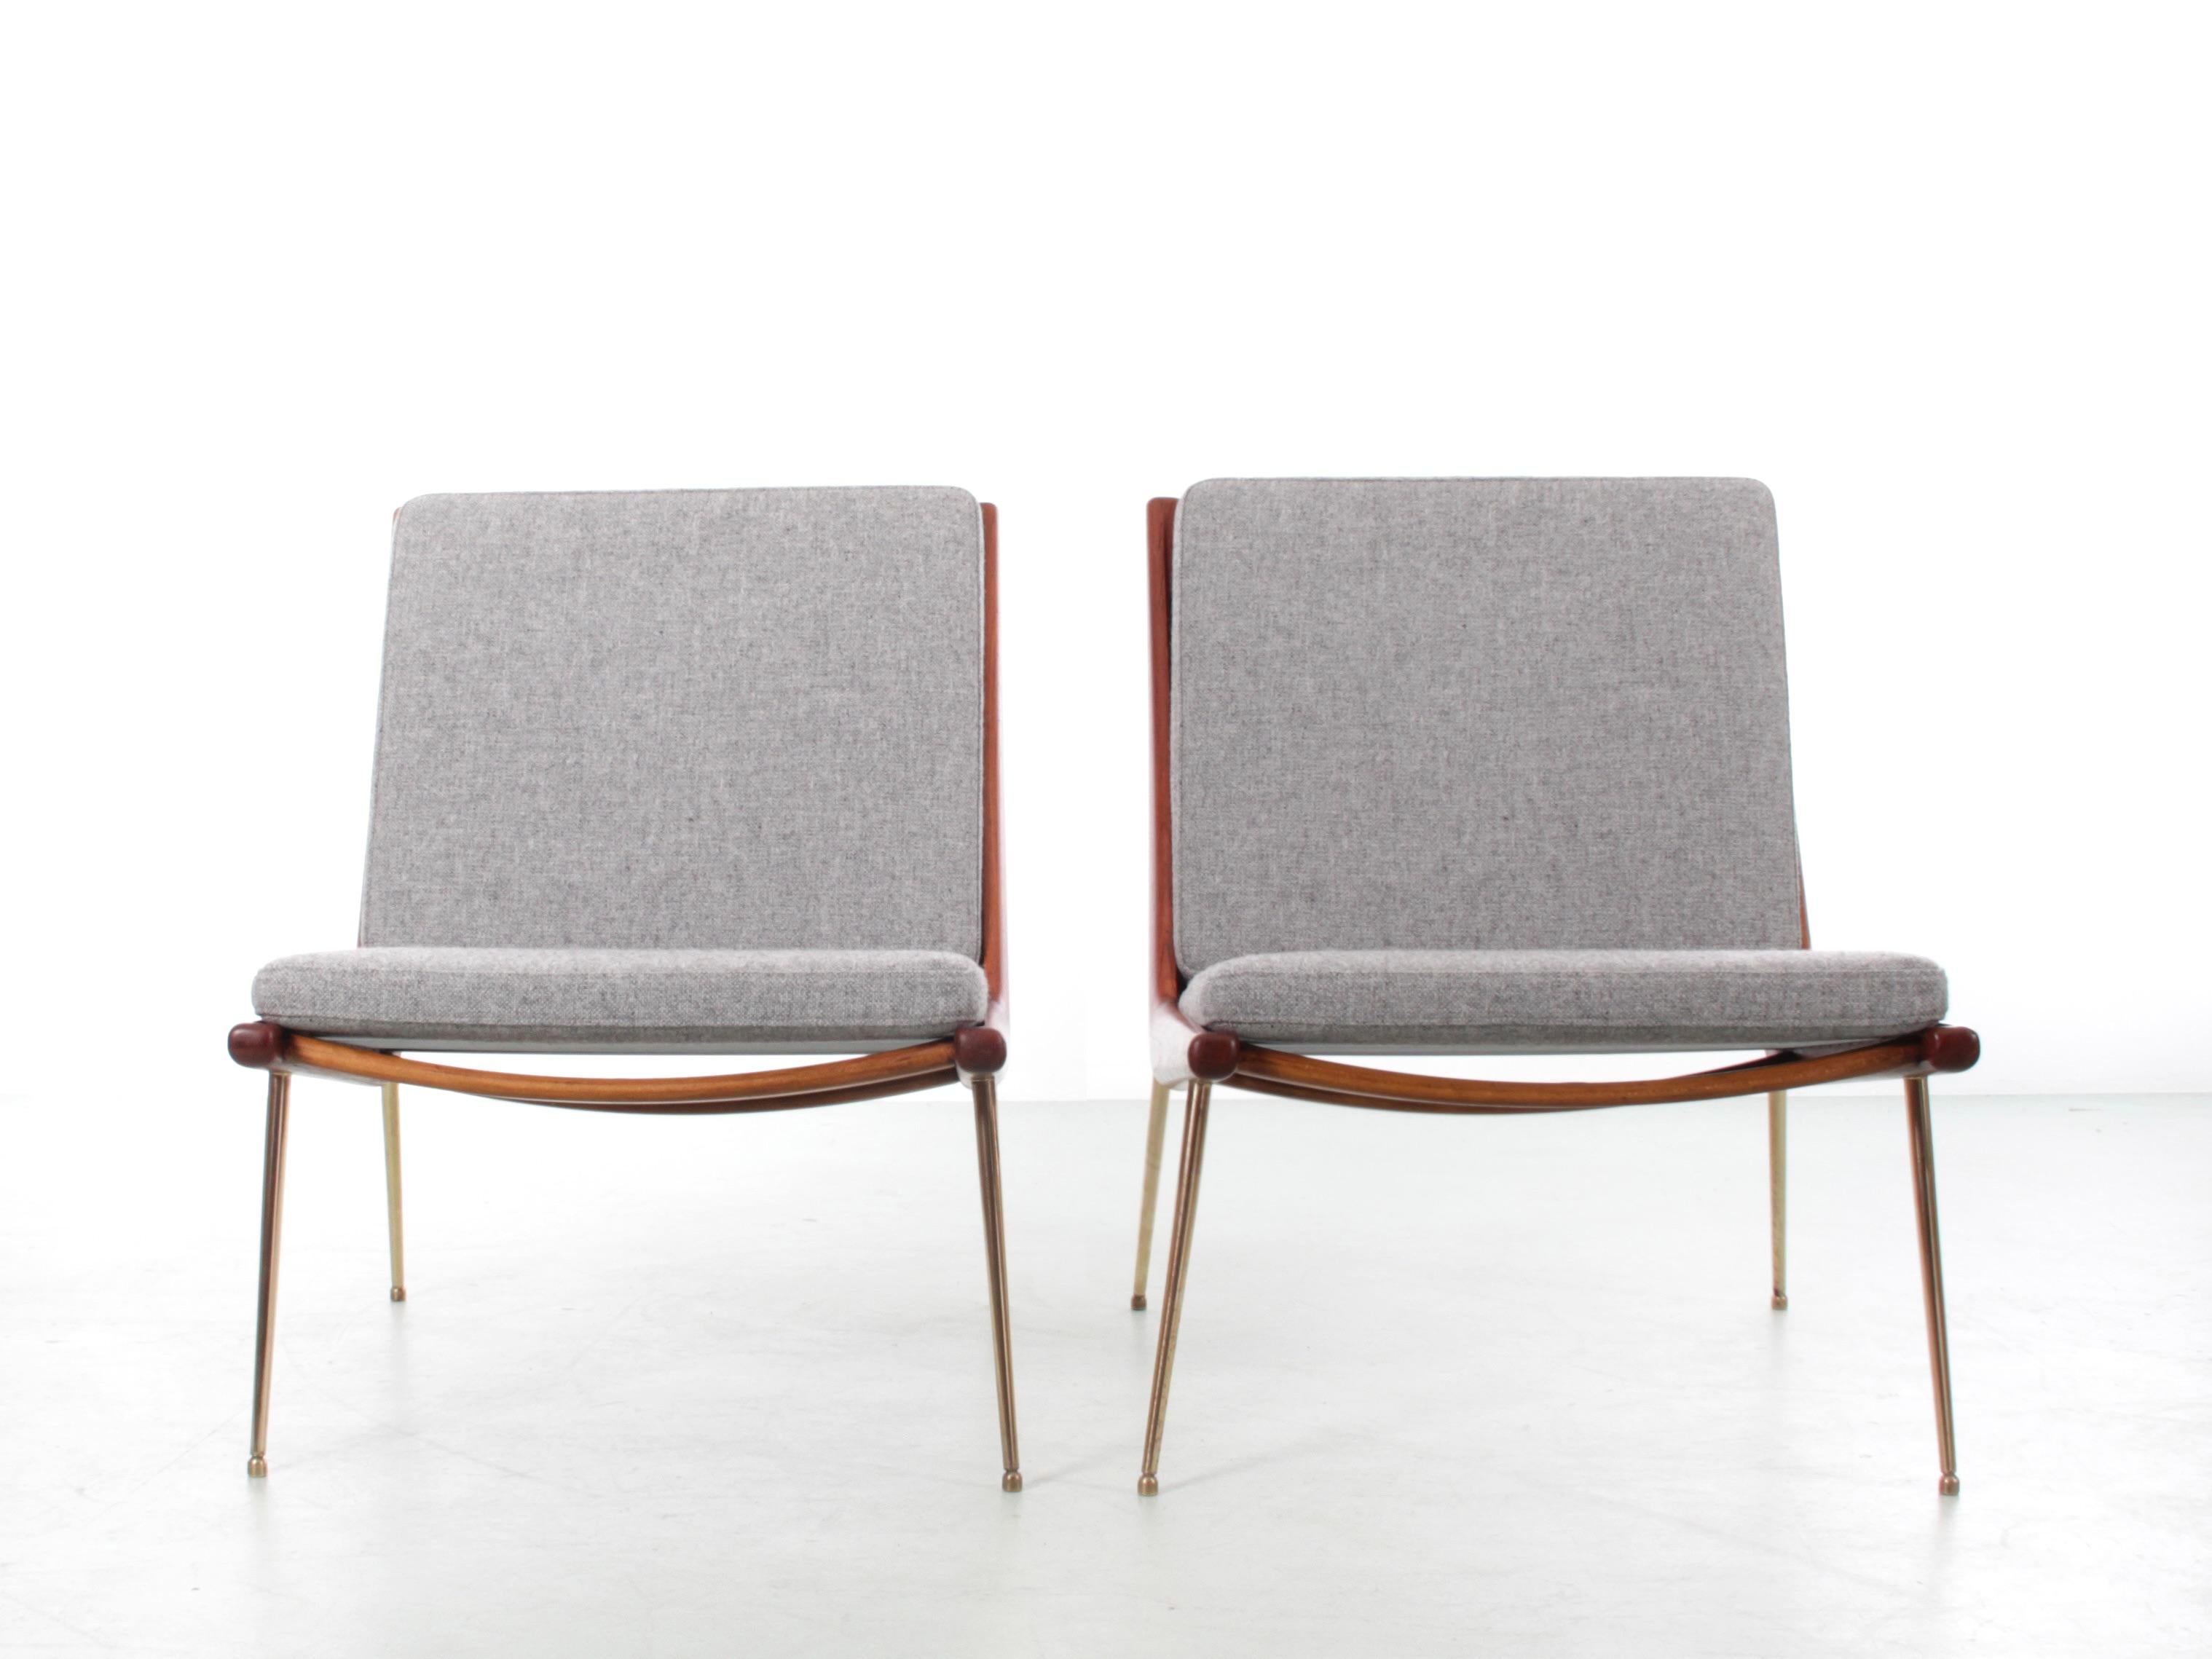 Paire de fauteuils scandinaves en teck créés en 1956 par Peters Hvidt & Orla Molgaard Nielsen, connus sous le nom de modèle Boomerang ou parfois appelés FD-134. Structure en teck et pieds en laiton, assise et dossier rembourrés avec coussins à